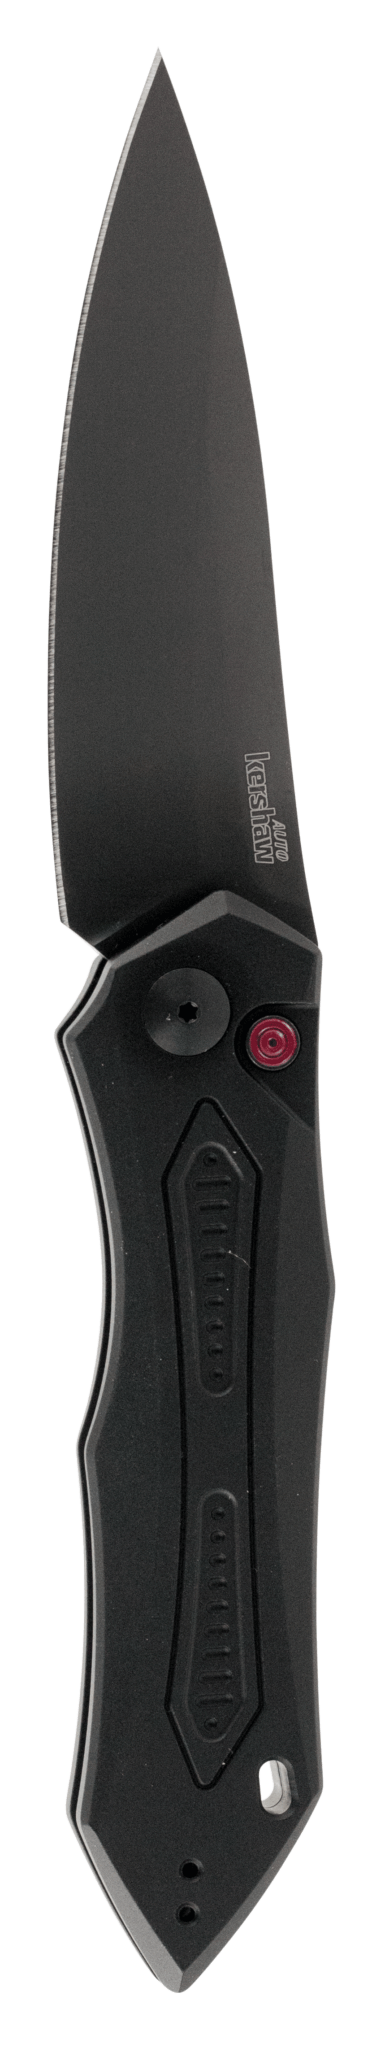 Kershaw 7800BLK Launch 6 3.75″ Folding Drop Point Plain Black DLC CPM 154 SS Blade Black Anodized Aluminum Handle Includes Pocket Clip